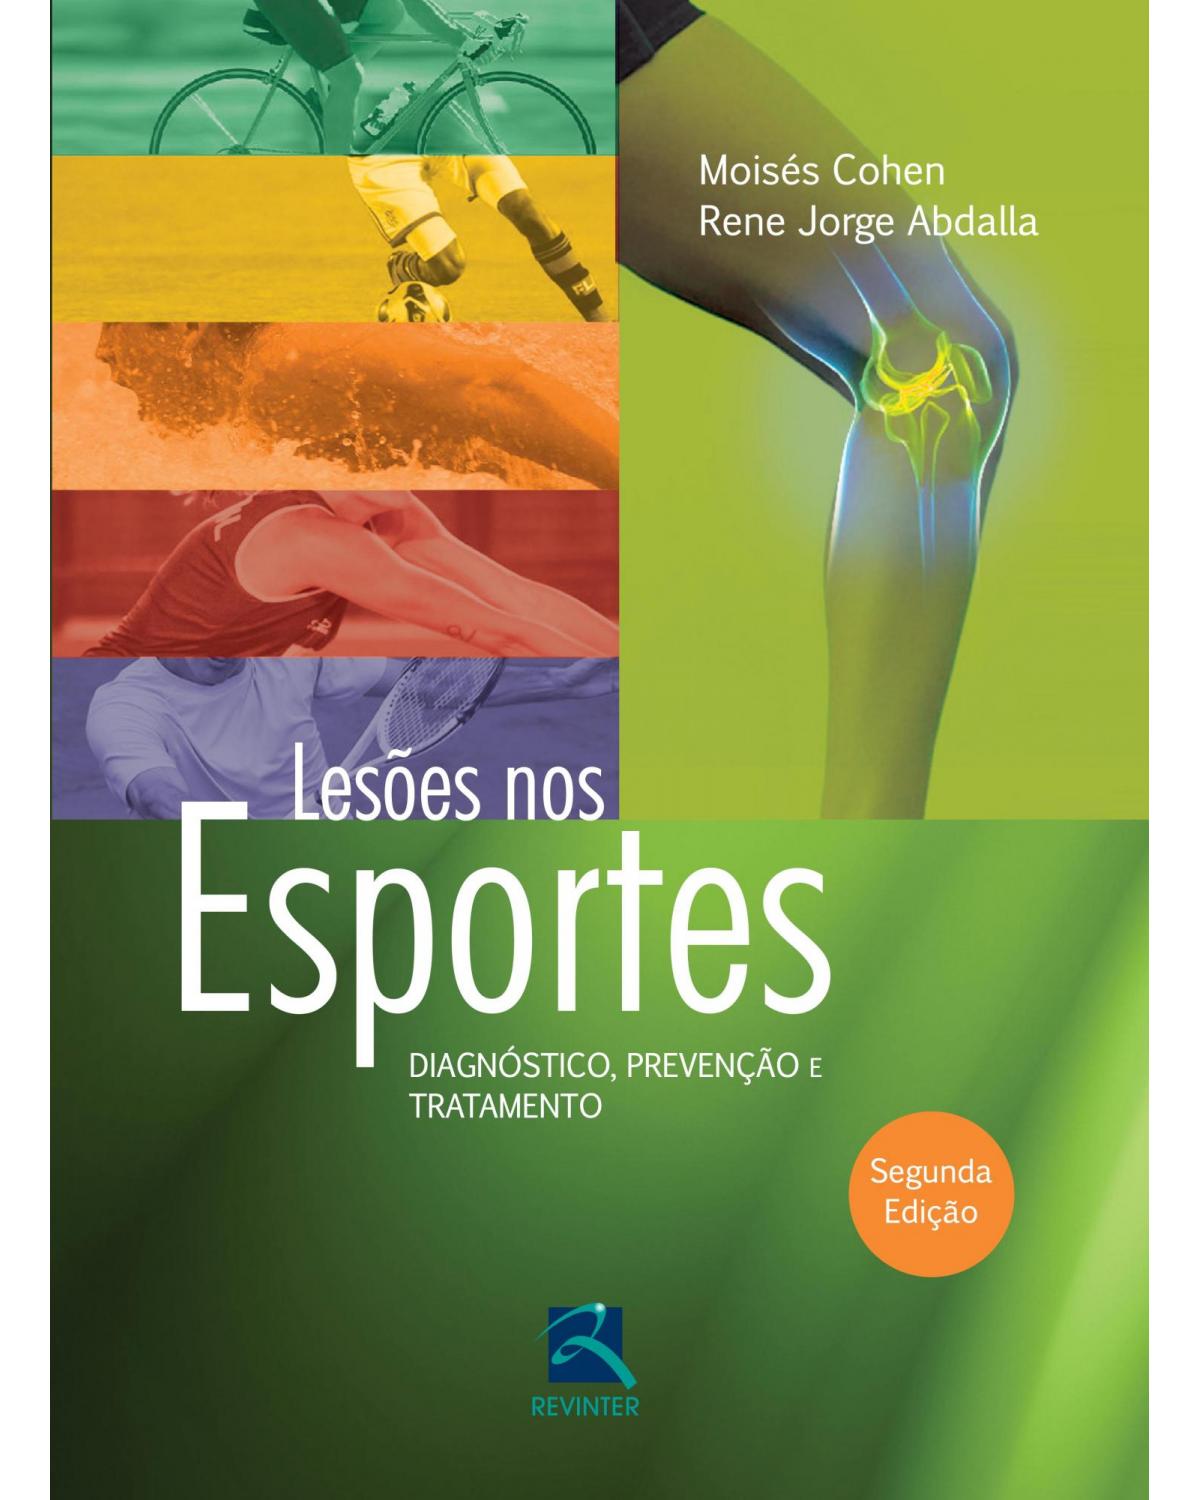 Lesões nos esportes - diagnóstico, prevenção e tratamento - 2ª Edição | 2015